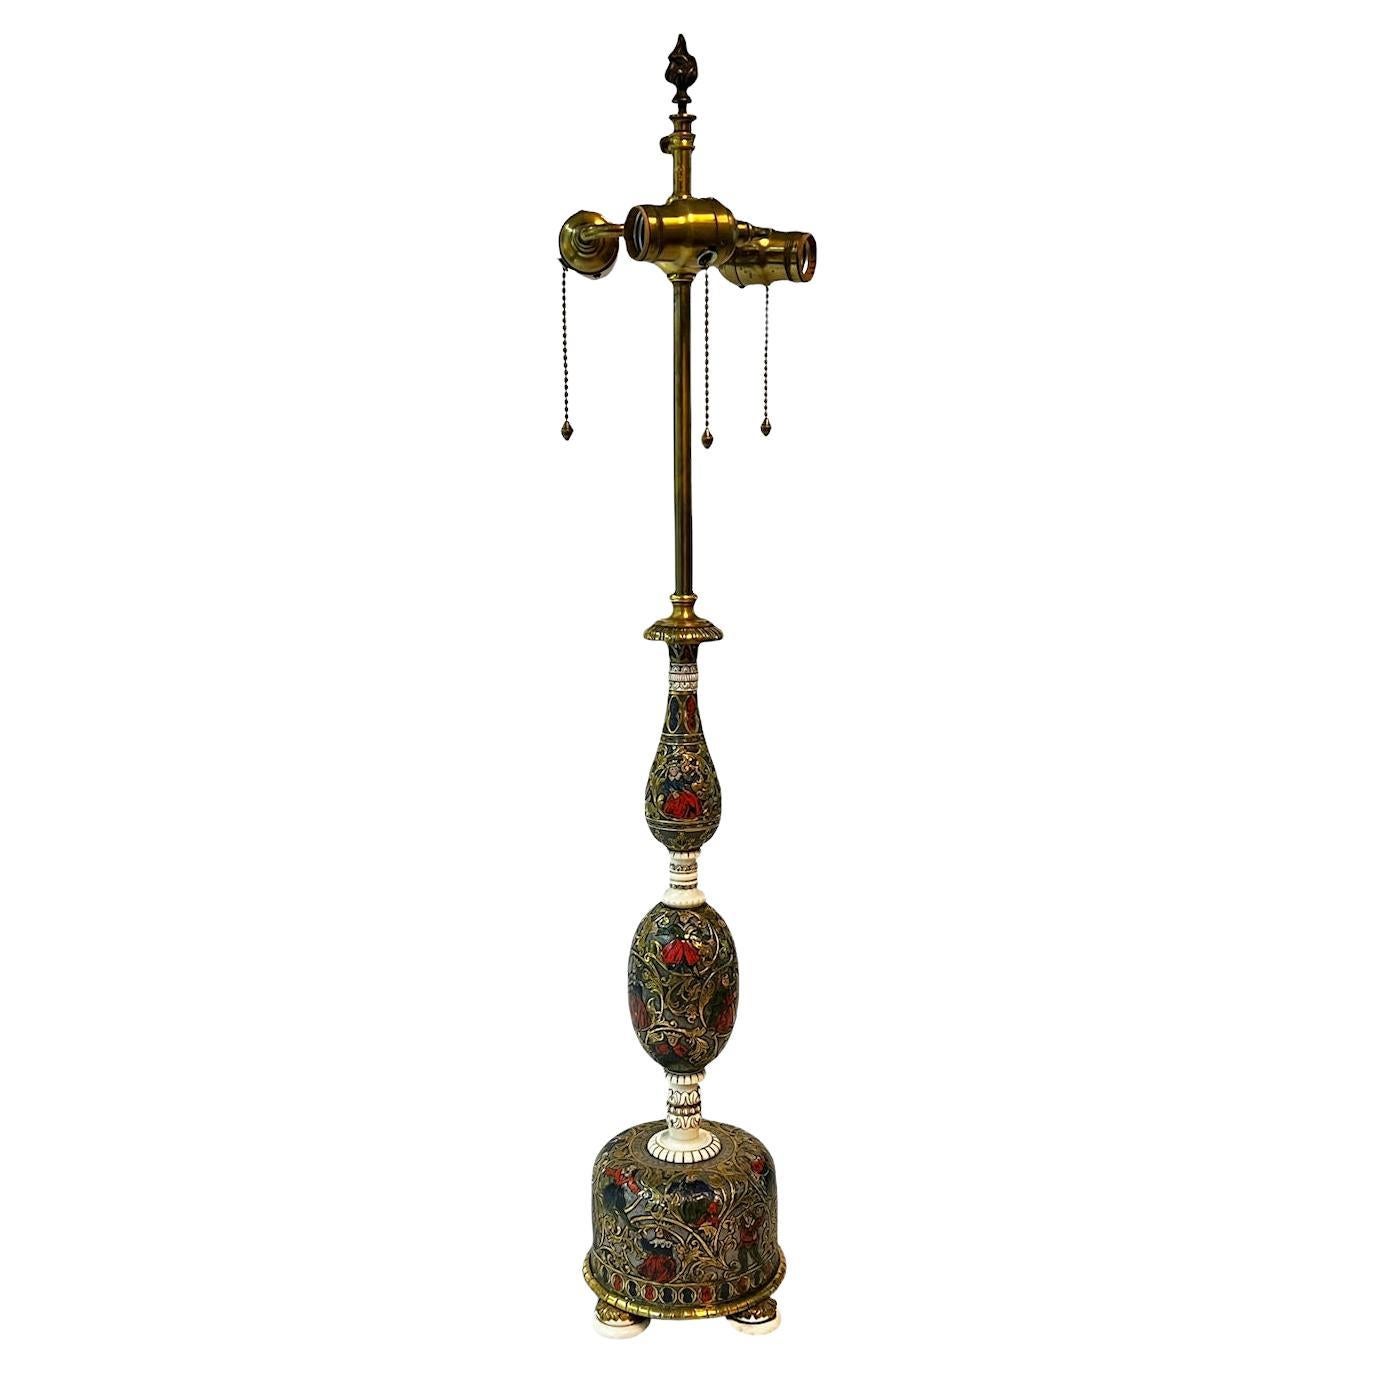 Renaissance-Revival-Tischlampe aus emaillierter Bronze und elfenbeinfarben von E.F. Caldwell